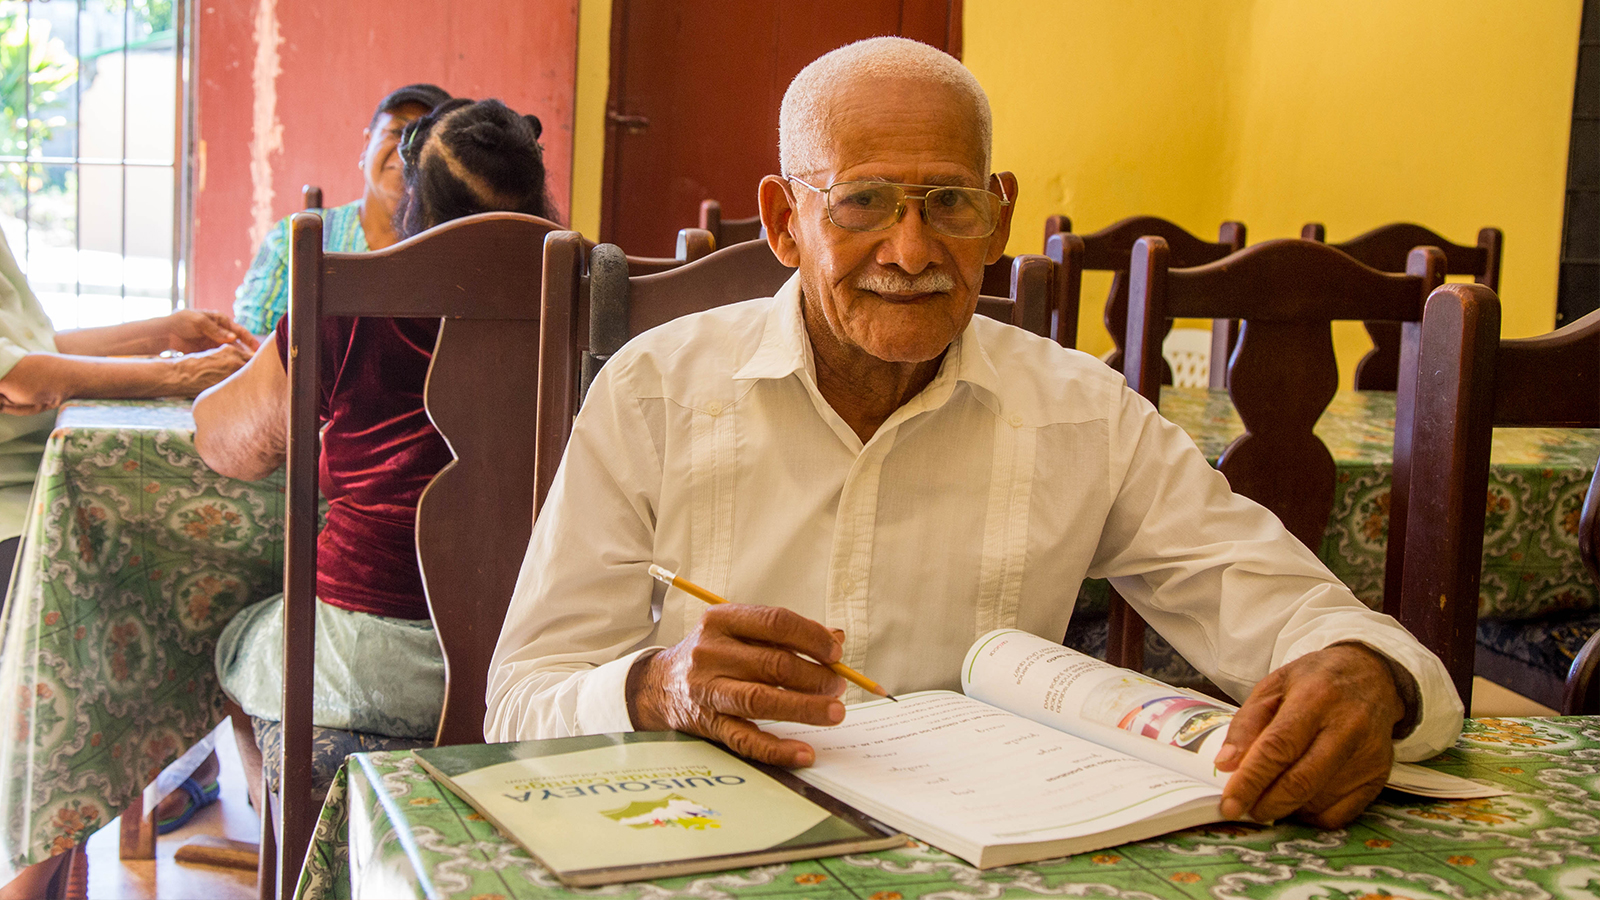 REPÚBLICA DOMINICANA: No importa la edad para aprender